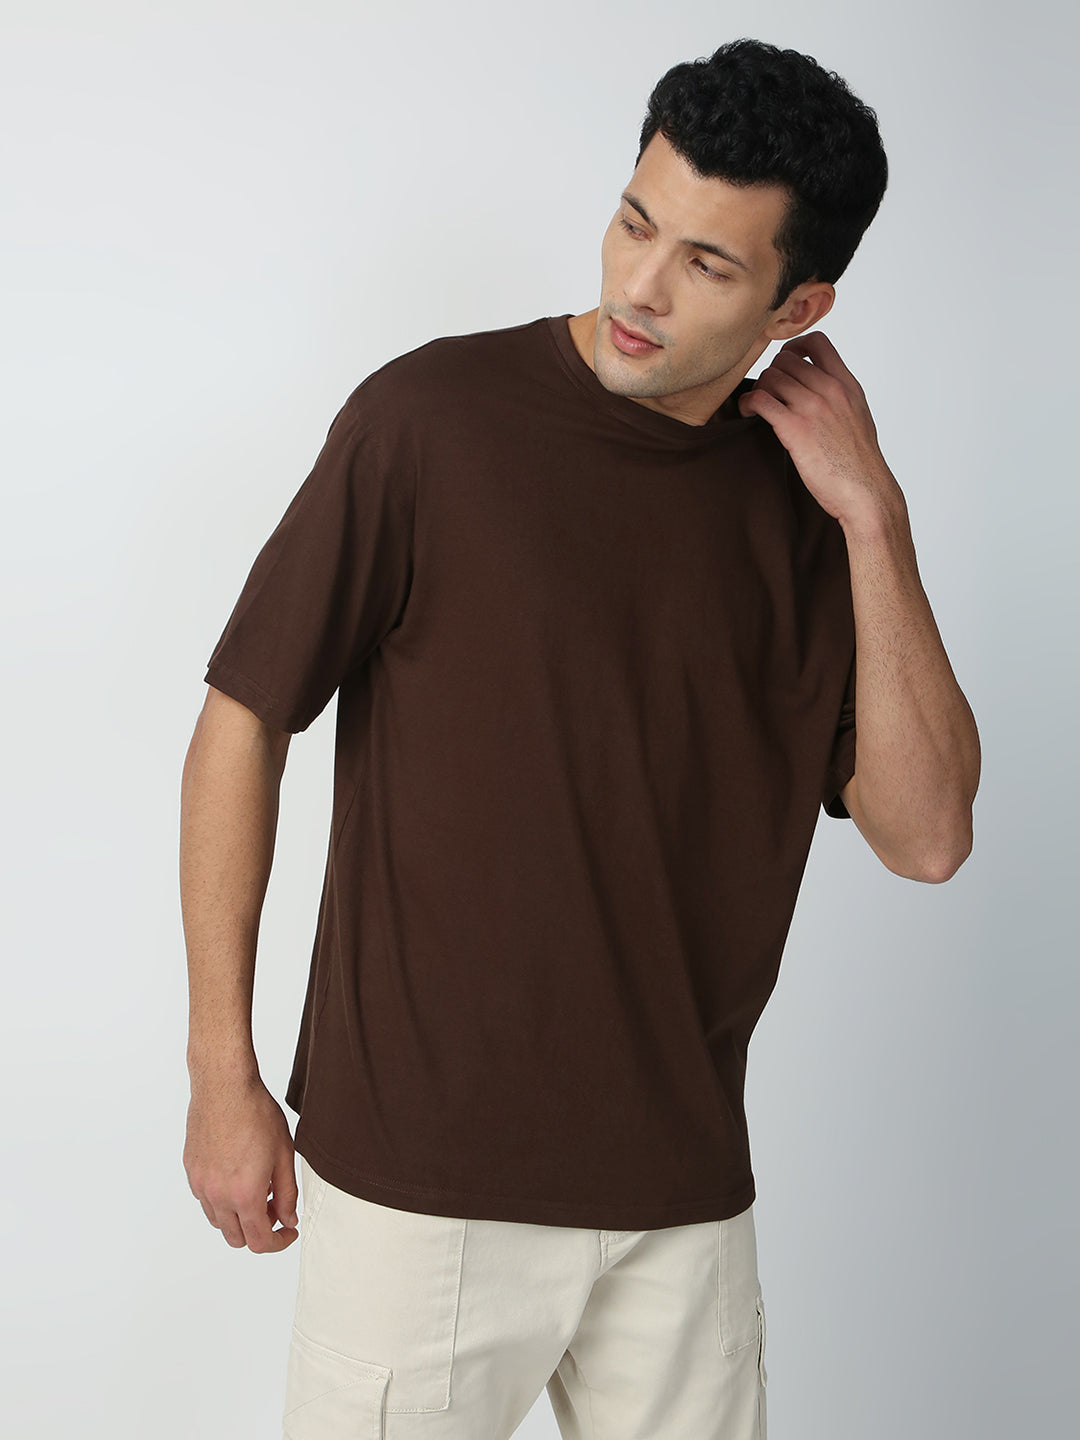 Buy Blamblack Men's Baggy Dark Brown Color Back Printed Round Neck T-Shirt